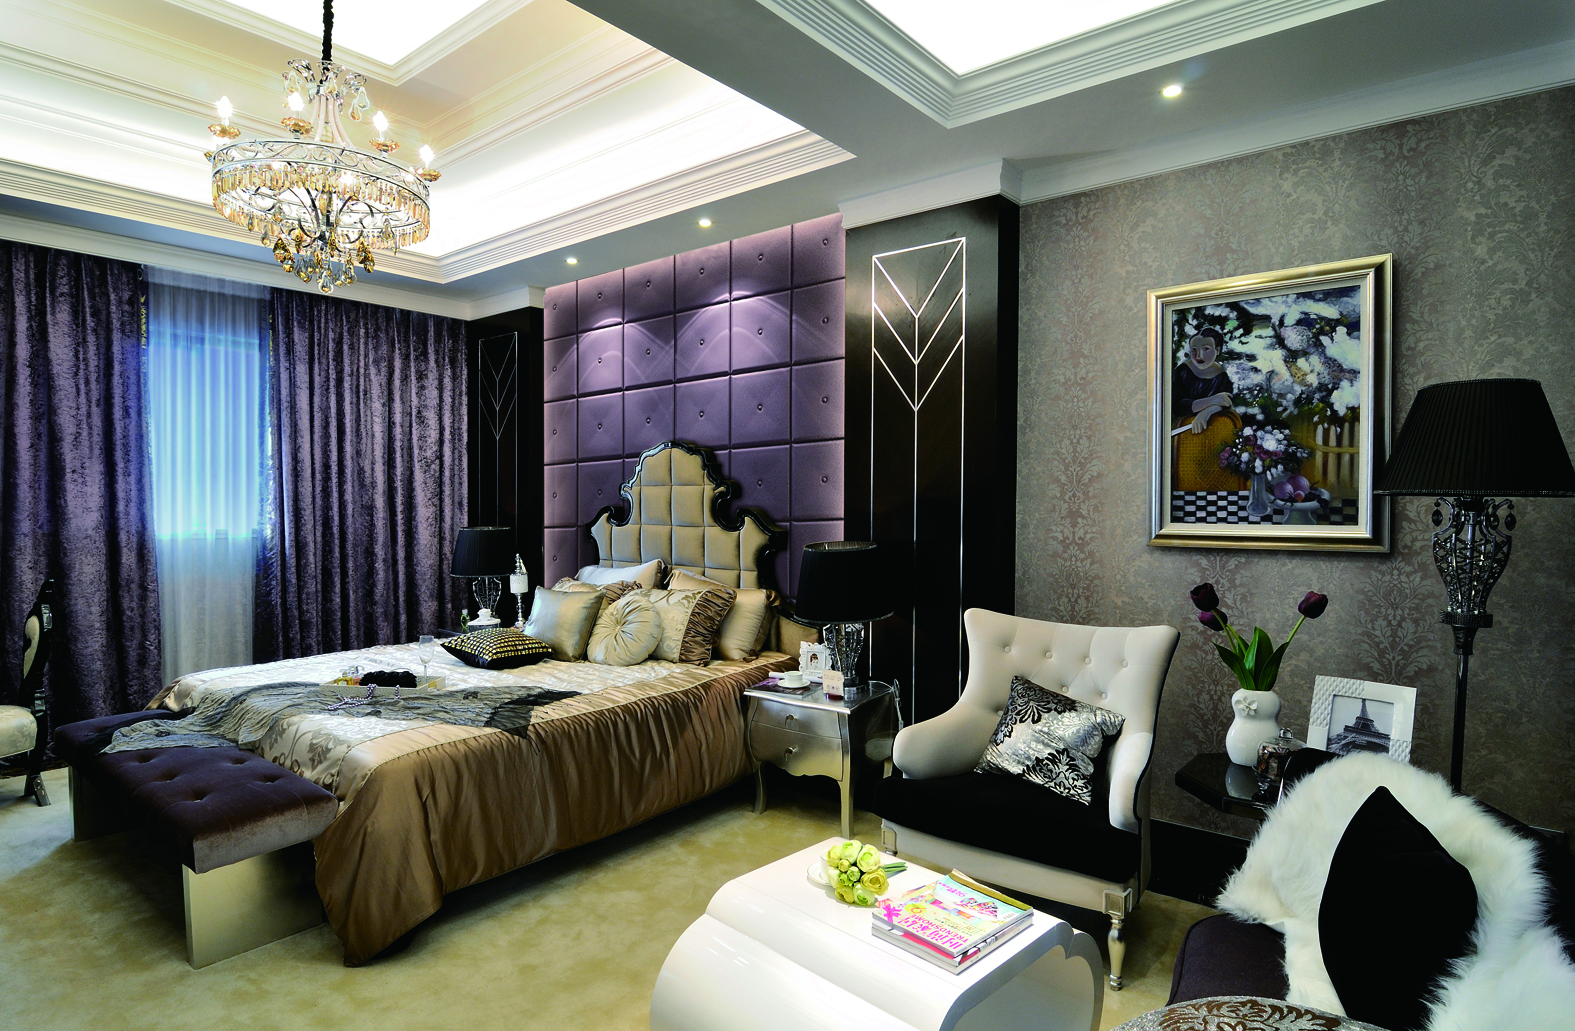 又是一间欧式卧房，紫色神秘优雅，天鹅绒窗帘奢华立现。